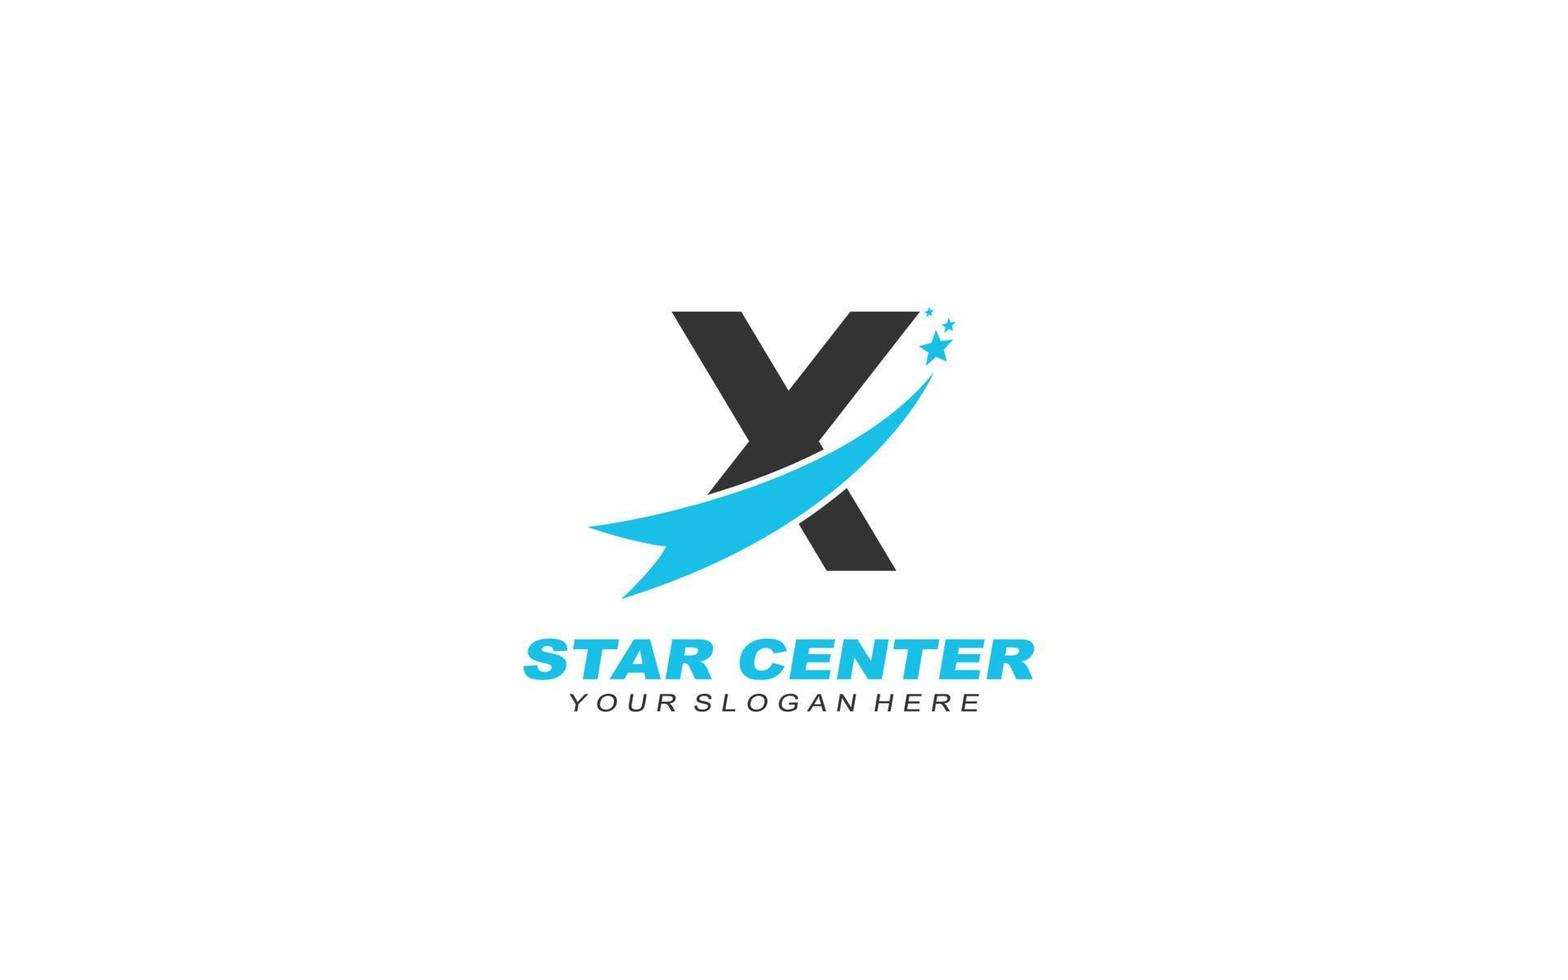 X star logo design inspiration. Vector letter template design for brand.